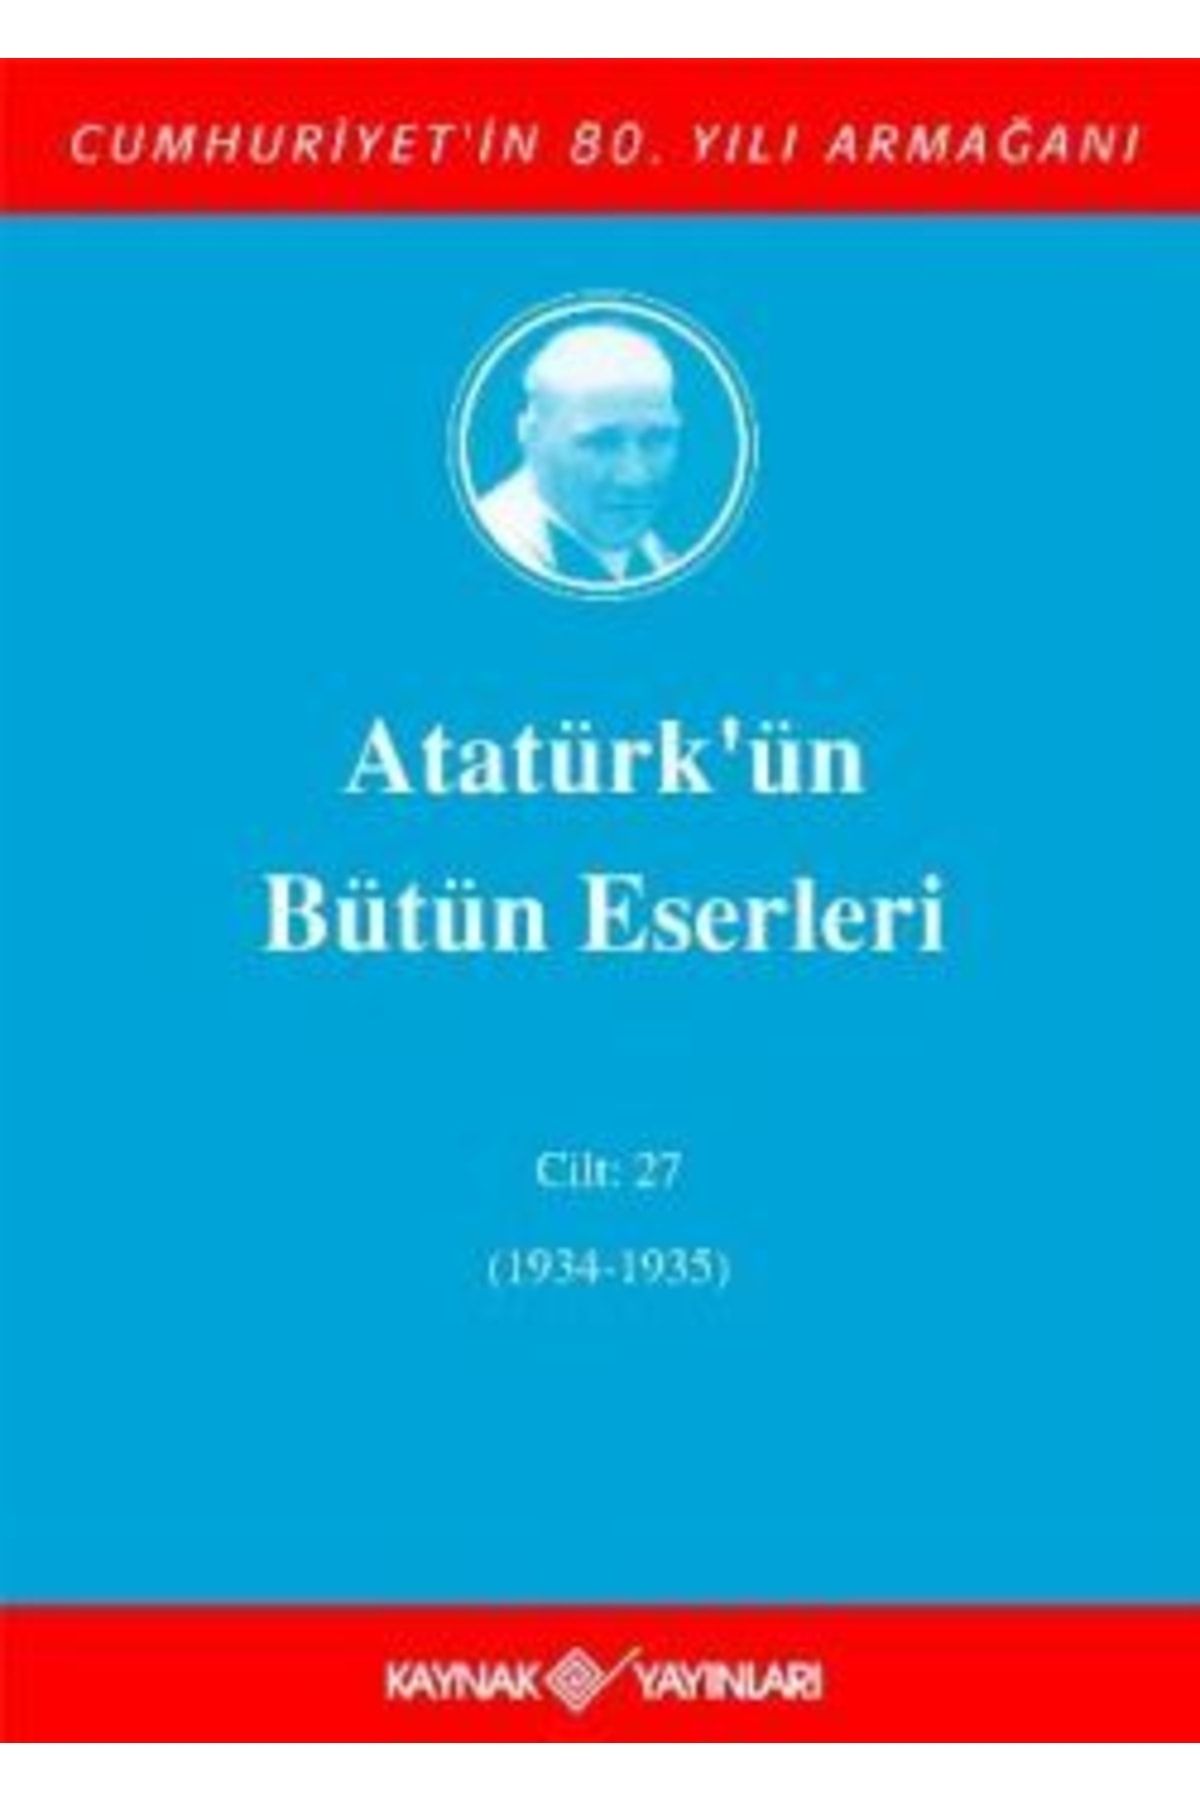 Kaynak Yayınları Atatürk'ün Bütün Eserleri Cilt: 27 (1934 - 1935) - - Mustafa Kemal Atatürk Kitabı